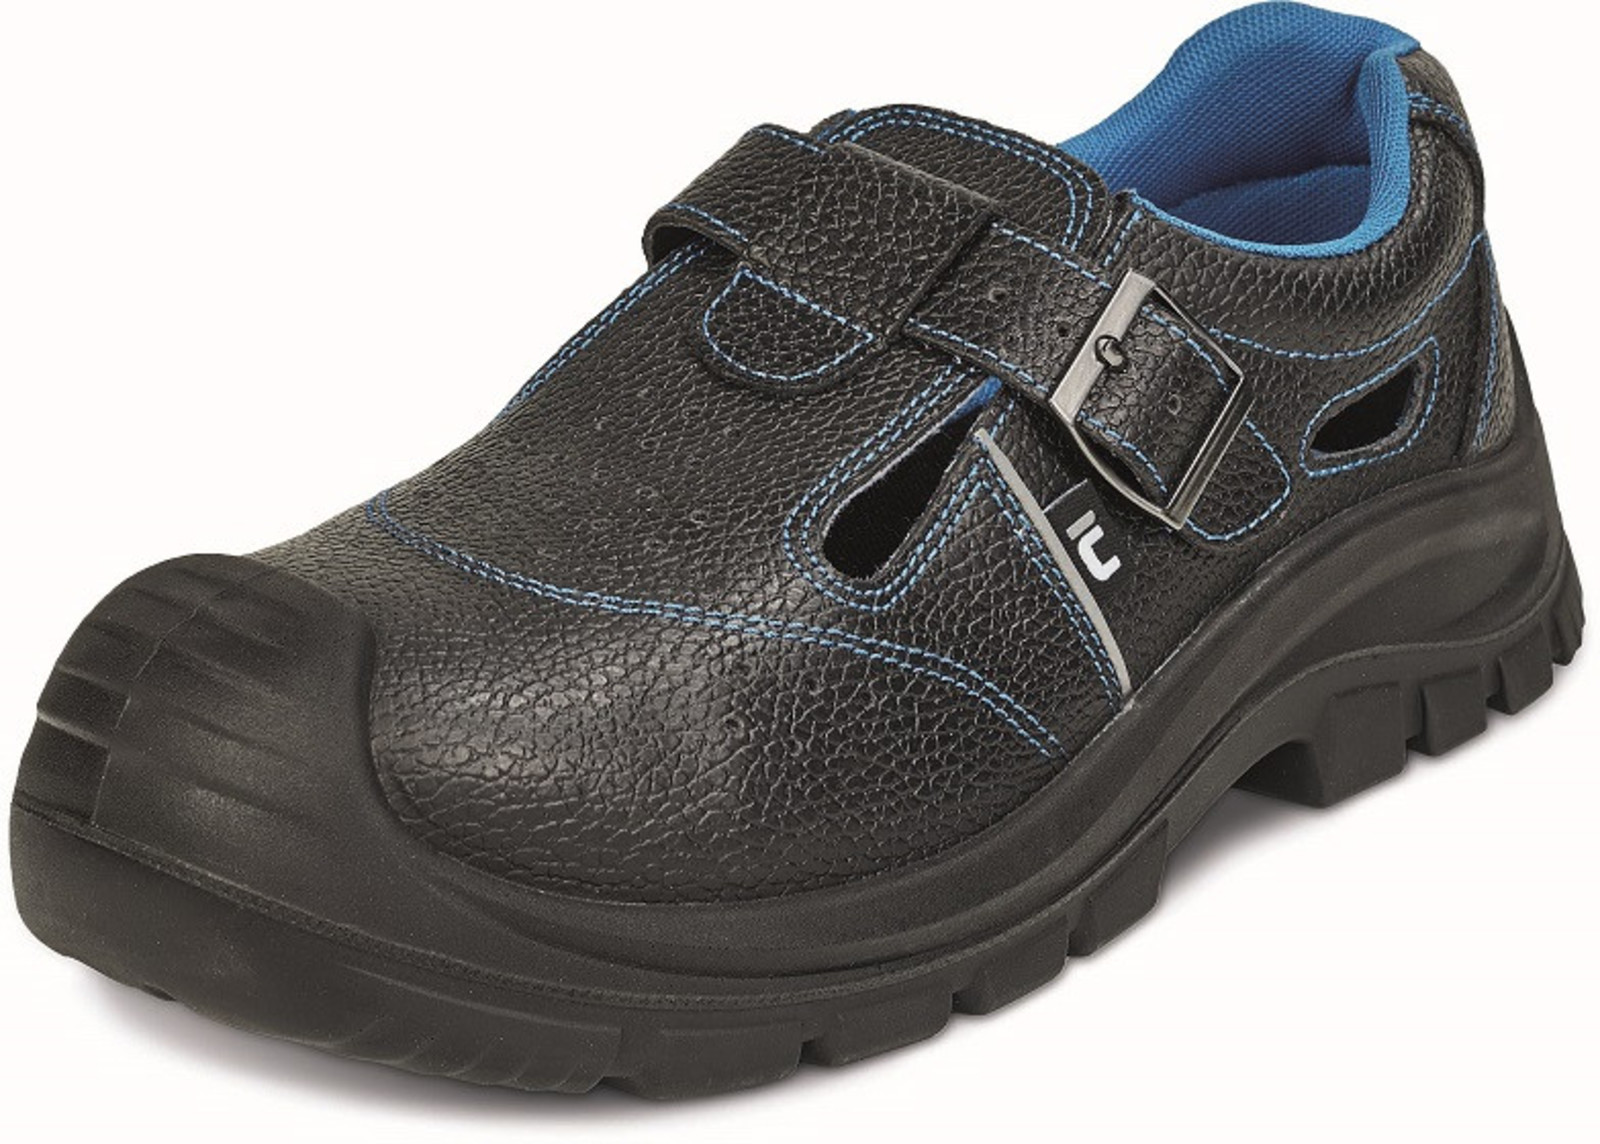 Bezpečnostné sandále Raven XT S1P - veľkosť: 41, farba: čierna